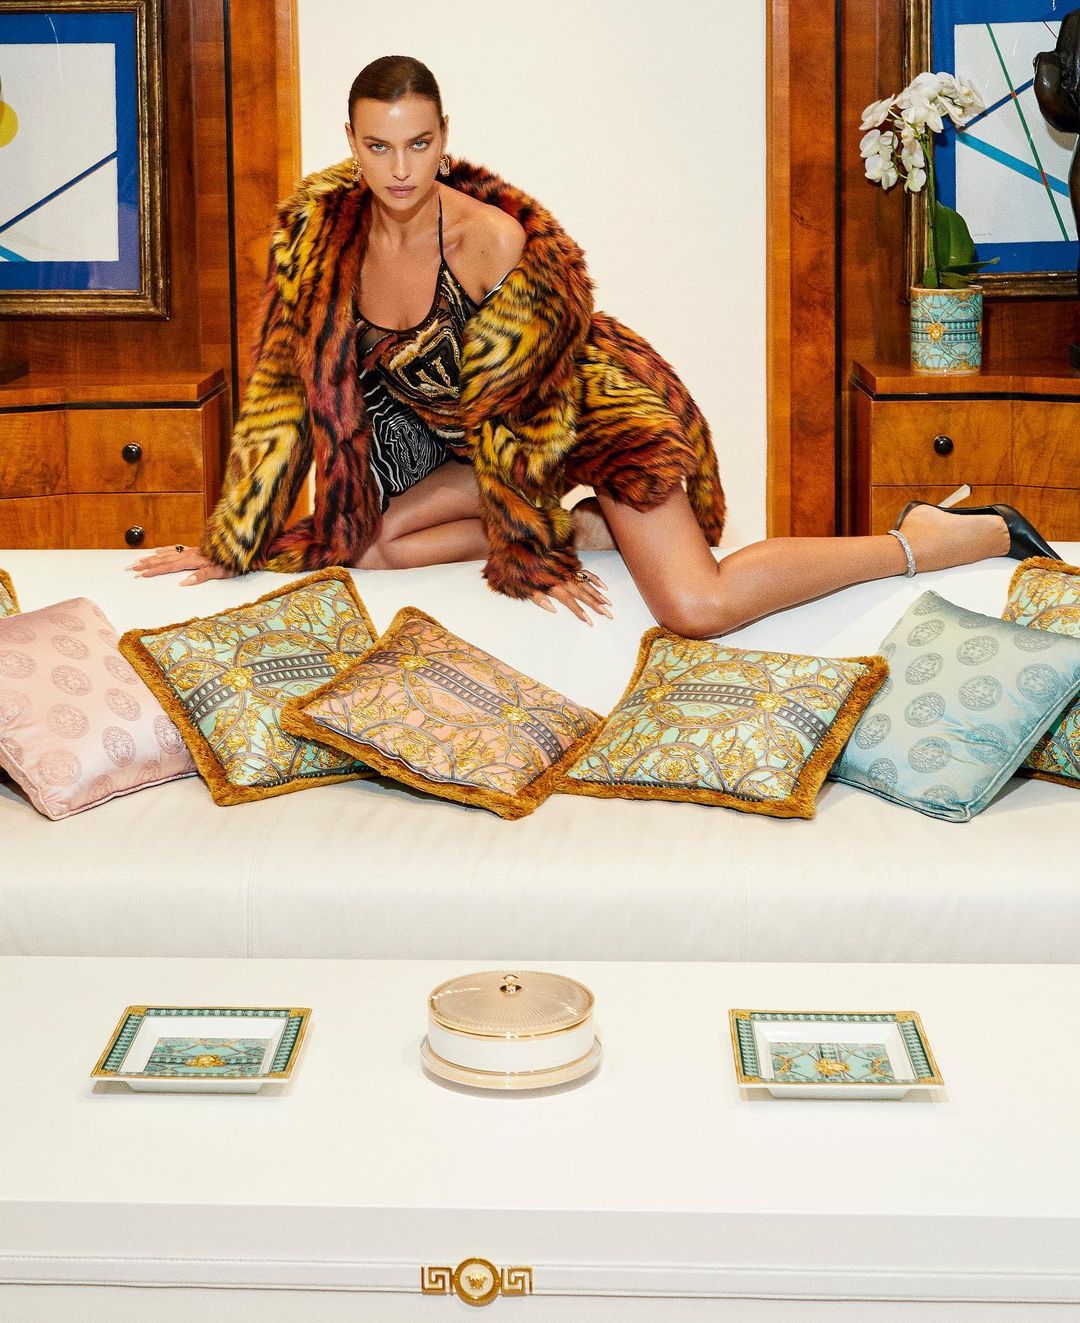 Fotos n°1 : Irina Shayk es All Legs para Versace!